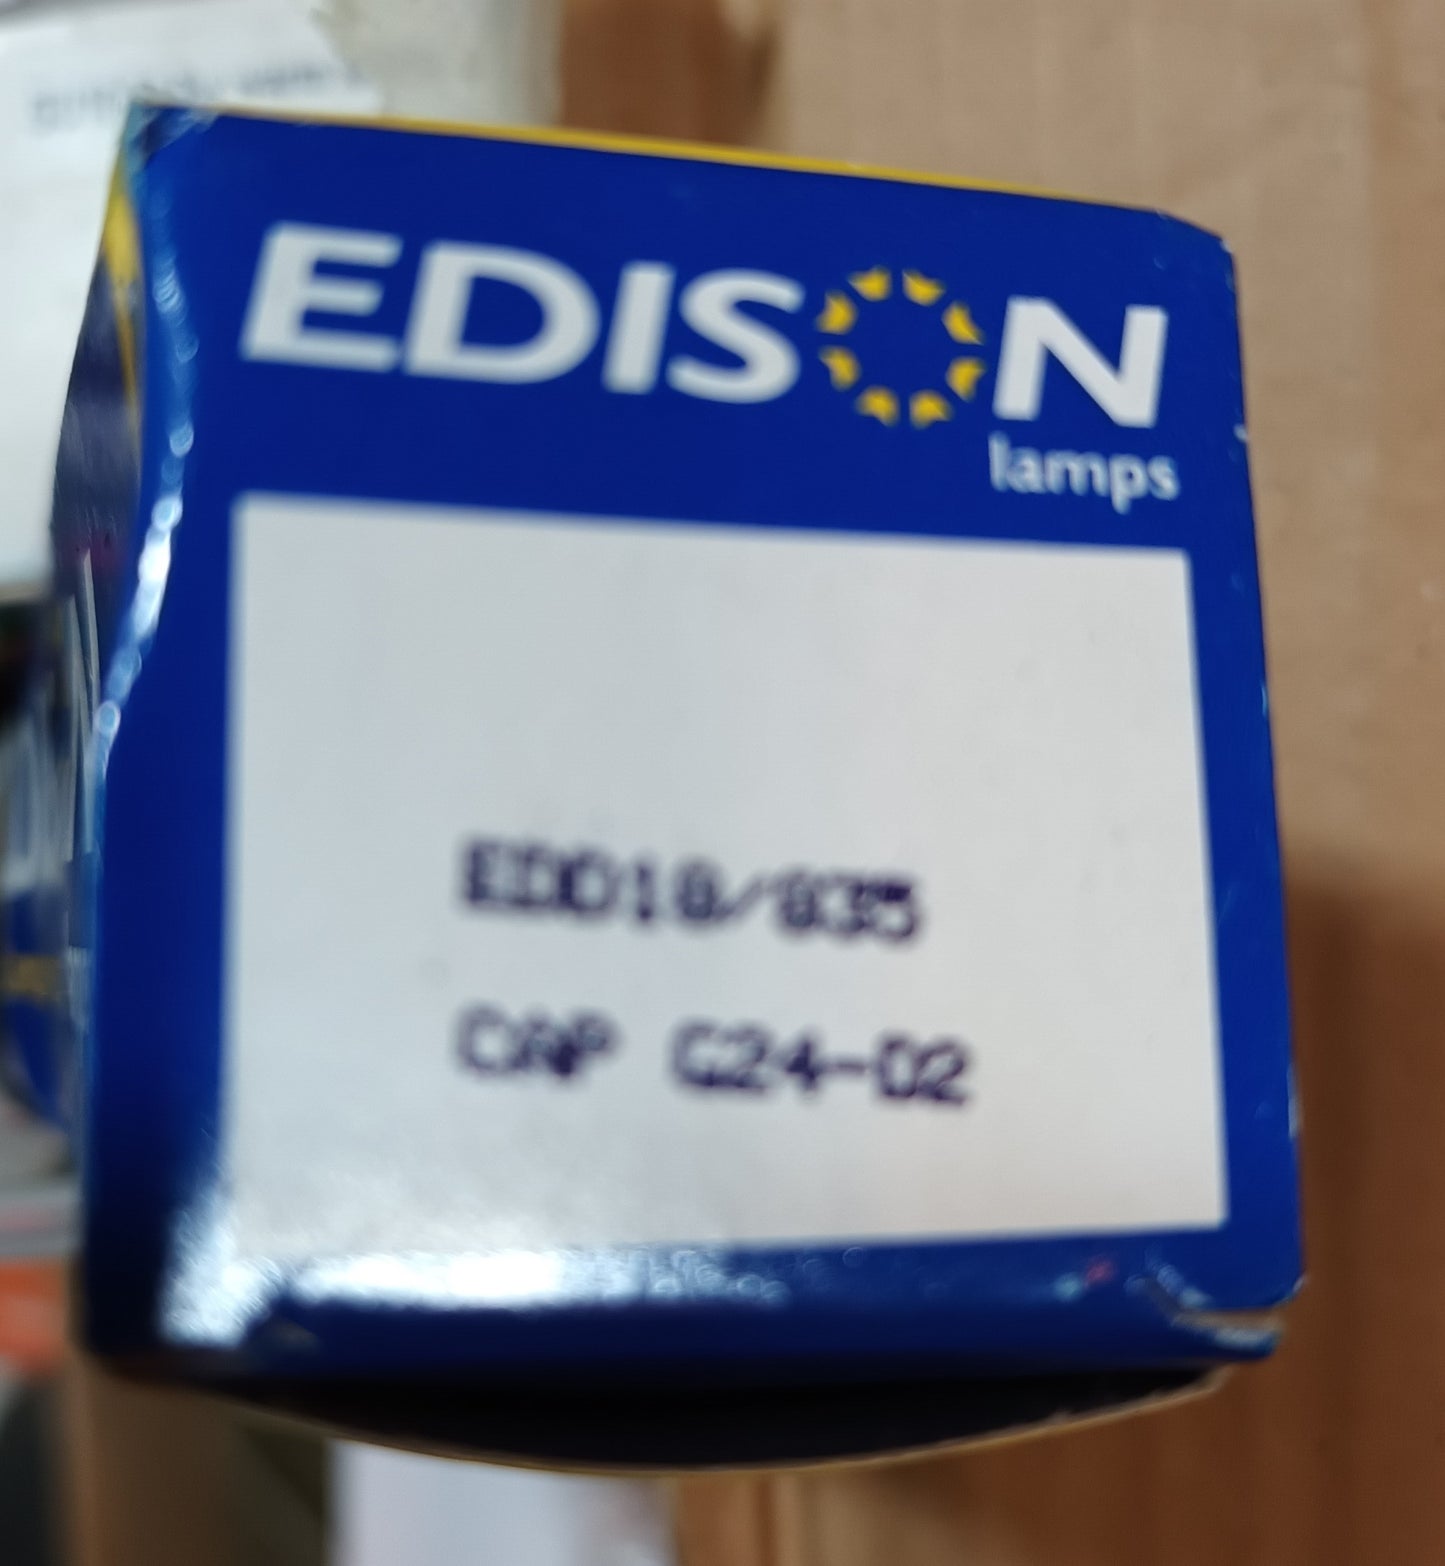 Edison lamps 18w 2 pin G24 d2 cool white / 4000k